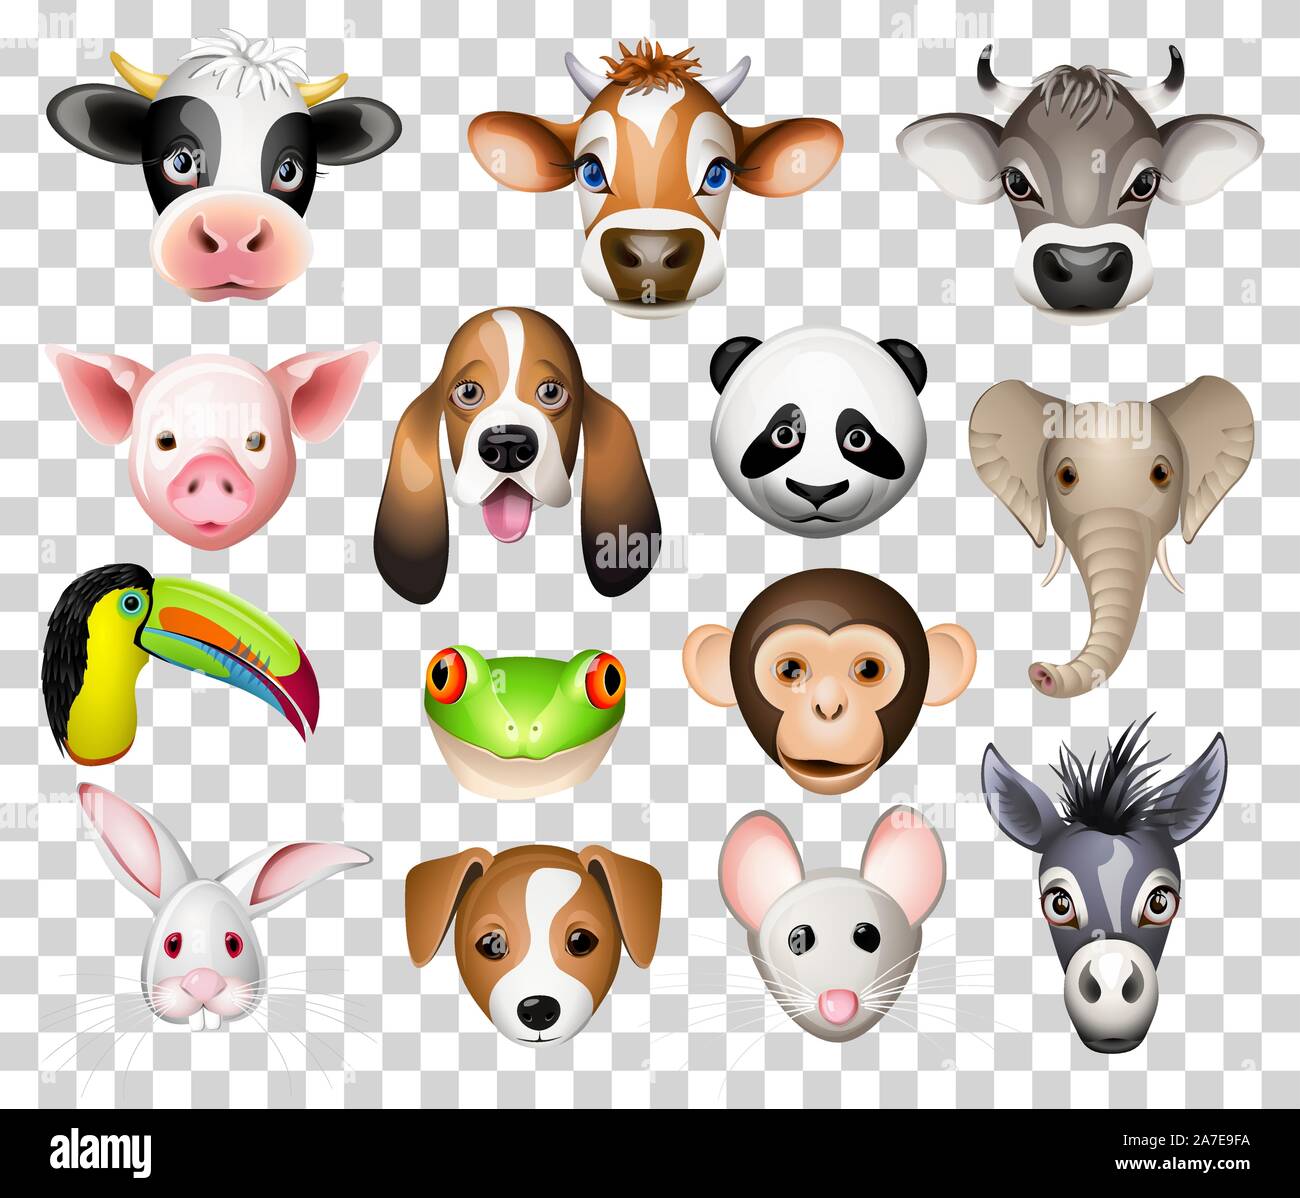 Abbildung der Cartoon Tiere mit Kuh, Schwein, Basset Hund, Panda, Elefant, Toucan, Frosch, Esel, Kaninchen, Maus und Esel Stock Vektor